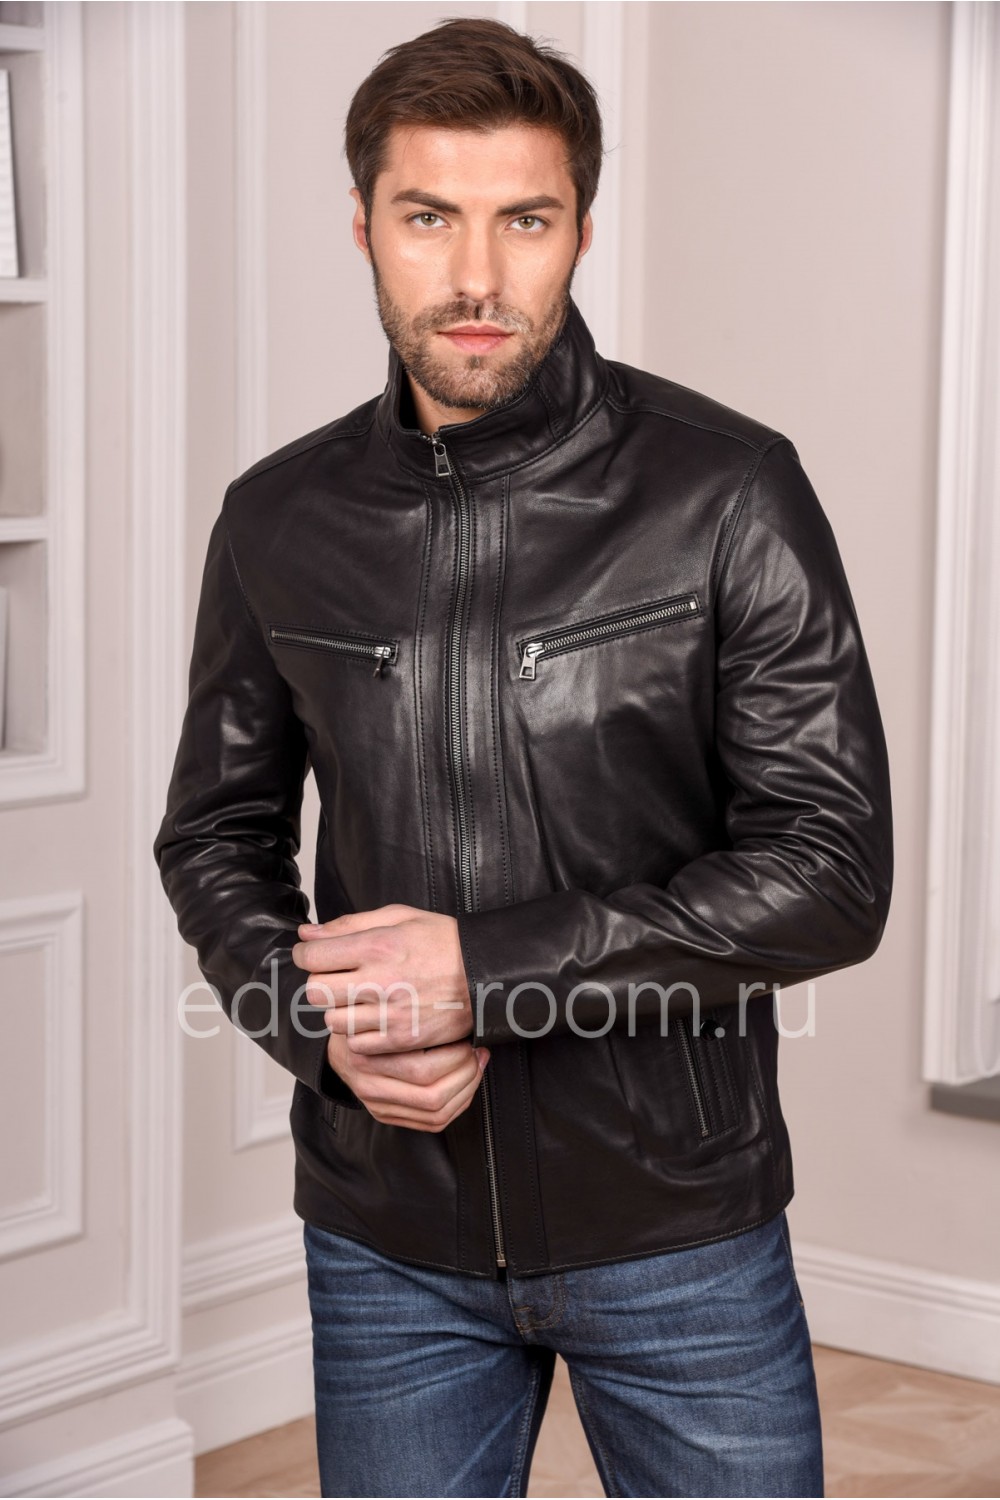 Стильная мужская куртка кожаная молодежная. Цвет черный